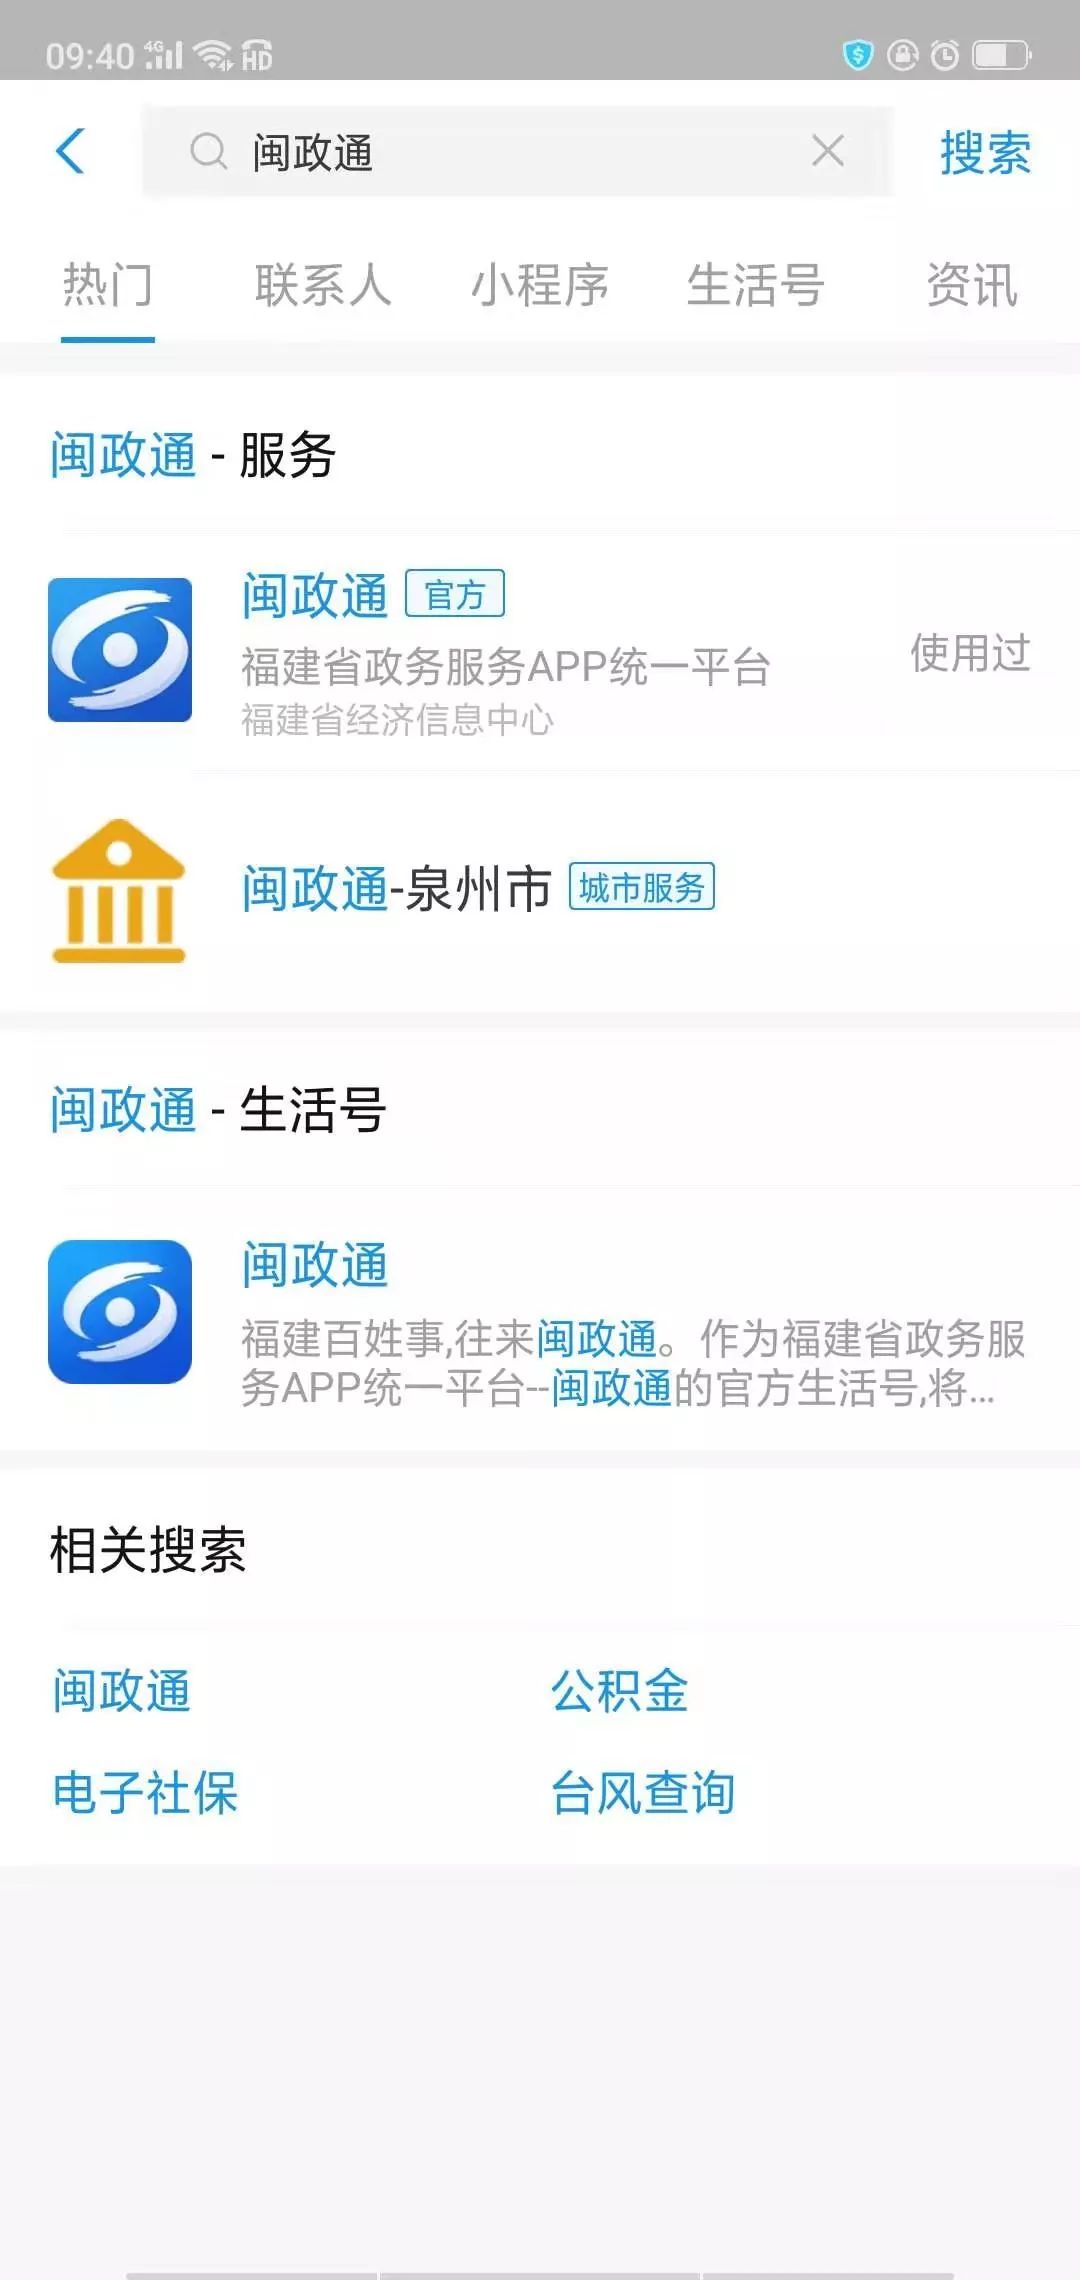 【闽政通app】让企业和群众办事像"网购"一样方便